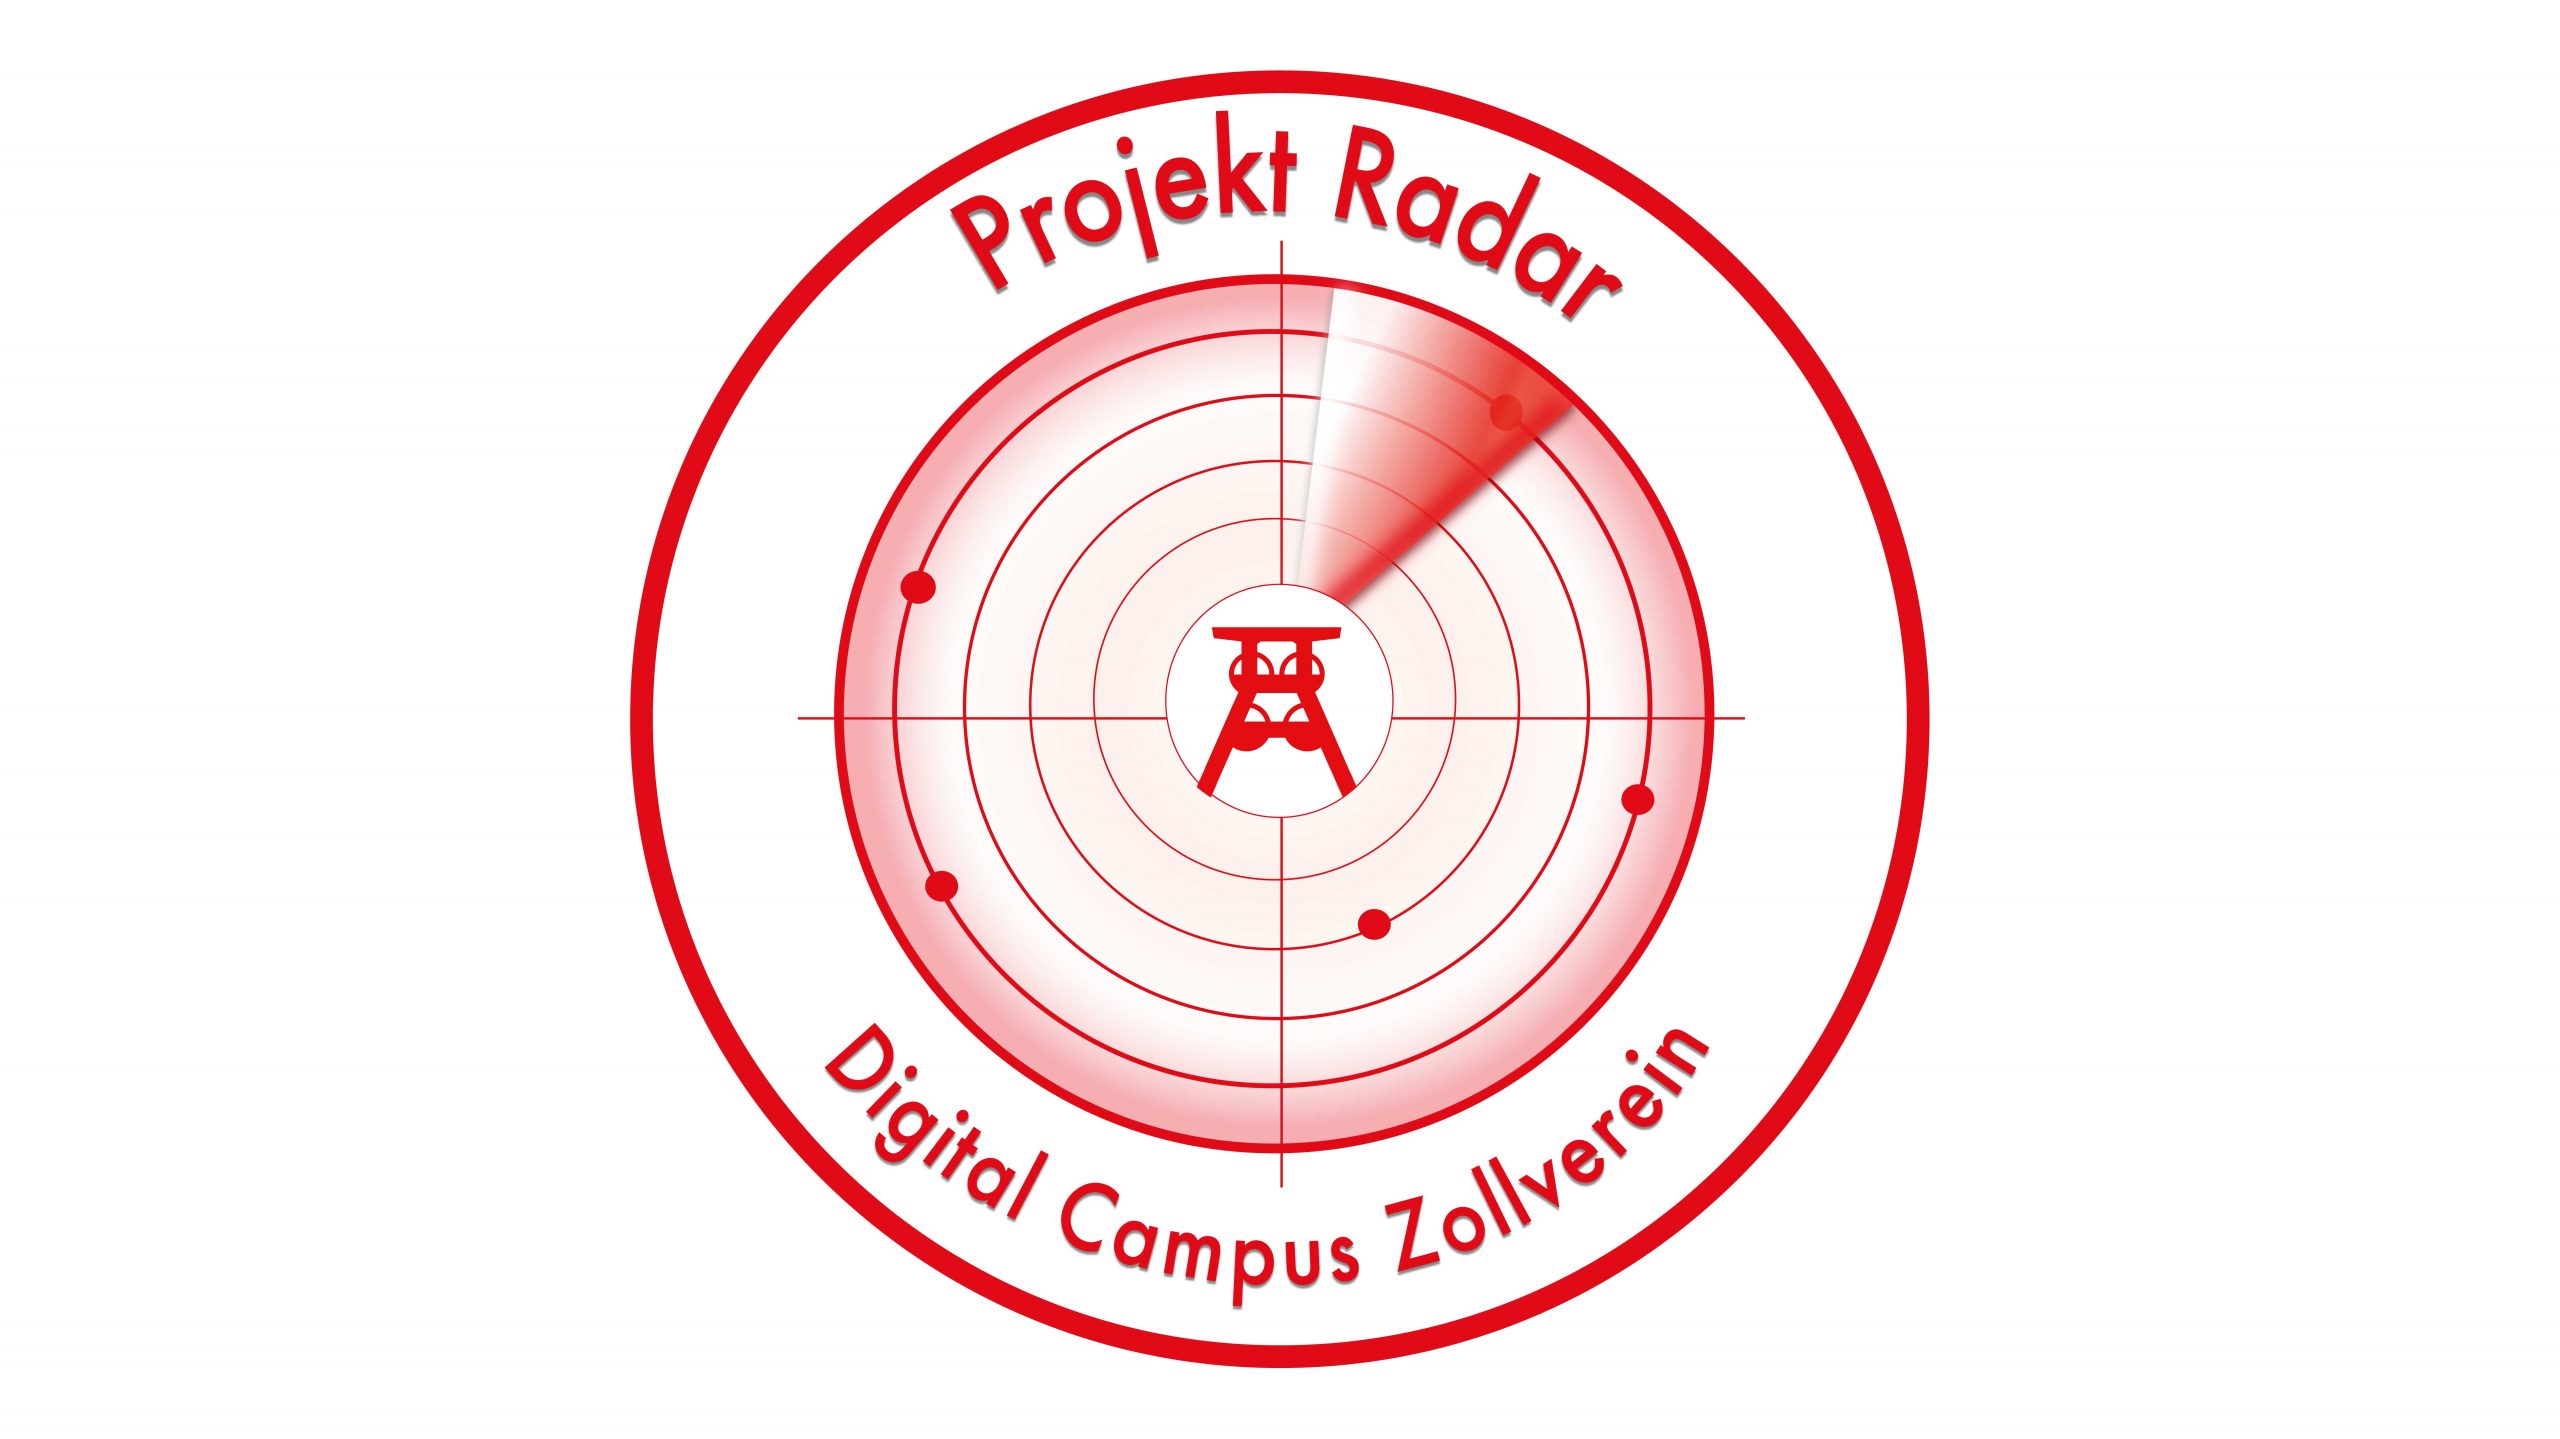 Projekt Radar Digital Campus Zollverein